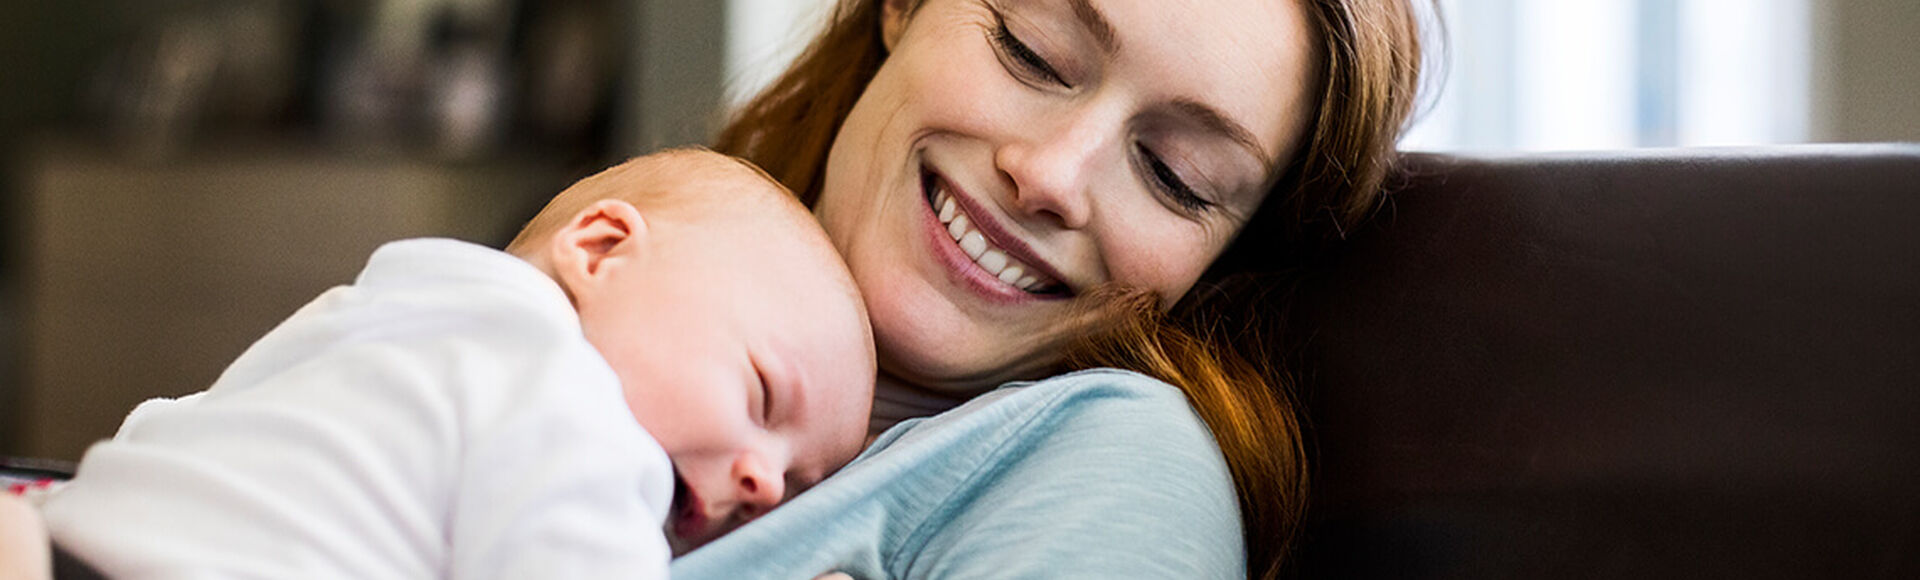 ¿Cómo hacer que los bebés se duerman rápido? | by Huggies Argentina